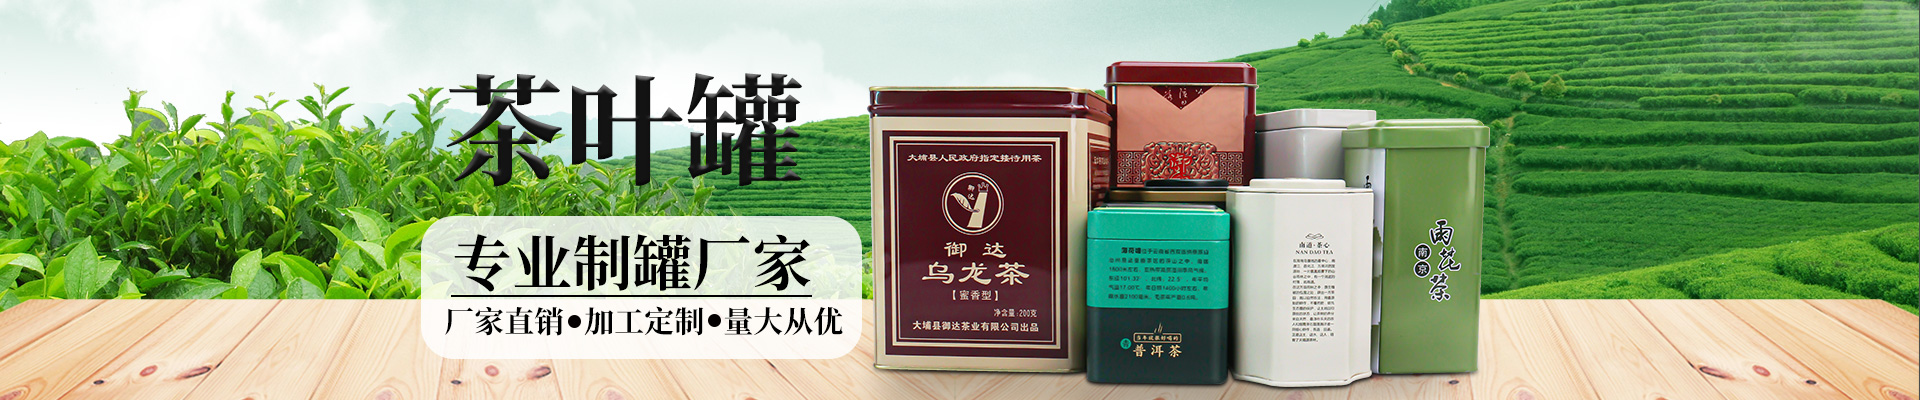 茶叶铁盒茶叶蓝鲸体育丨中国有限公司官网小横图